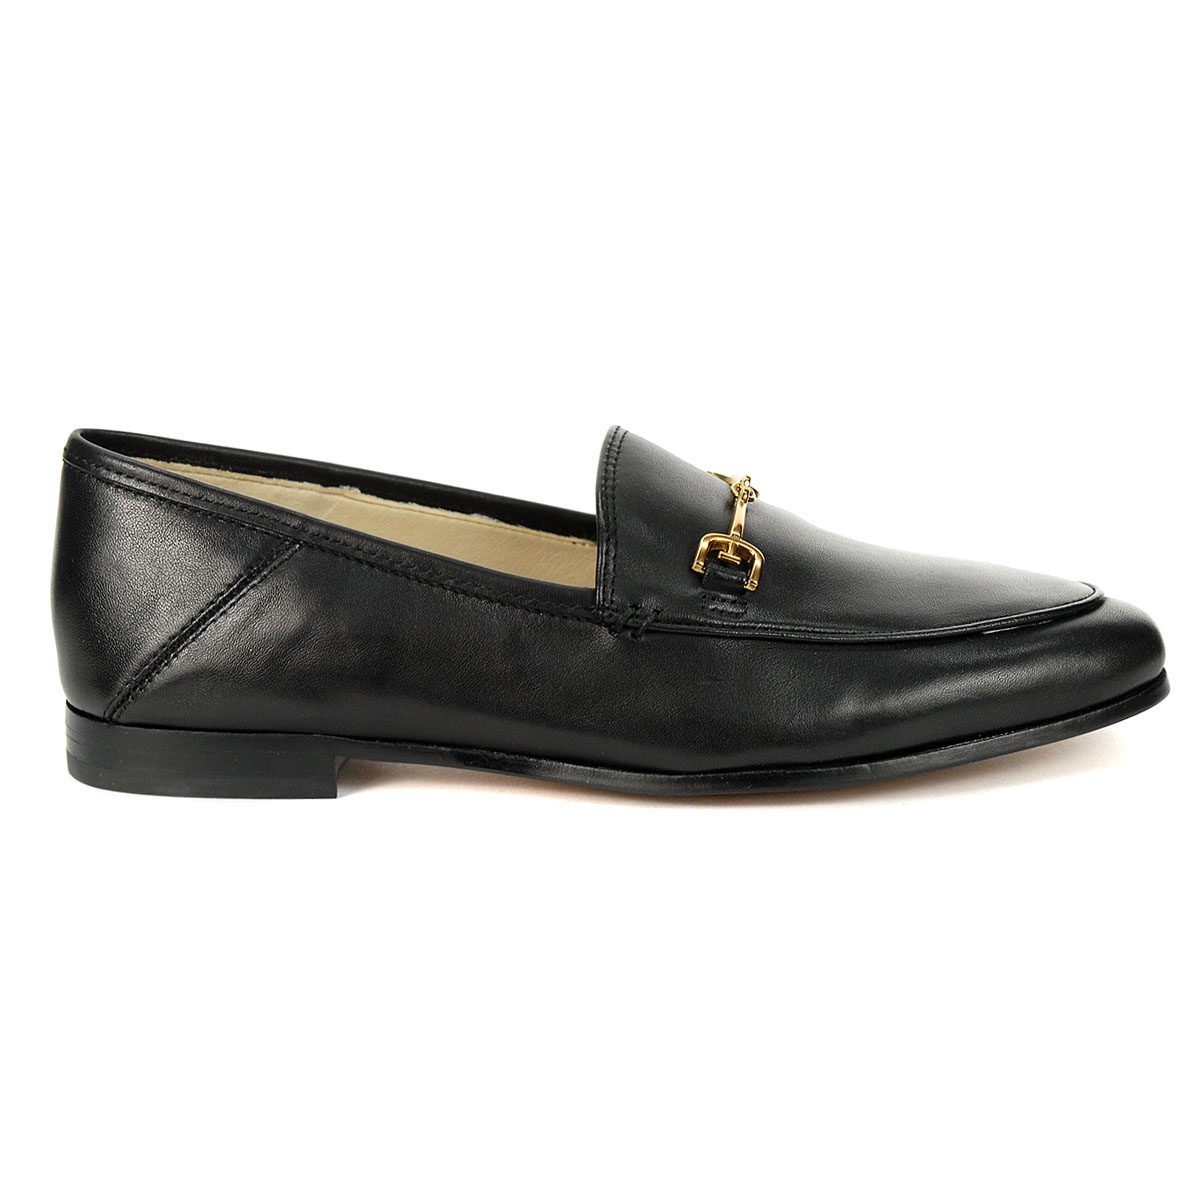 Sam Edelman Loraine Black/New Modena Calf Leather Loafers E851917015